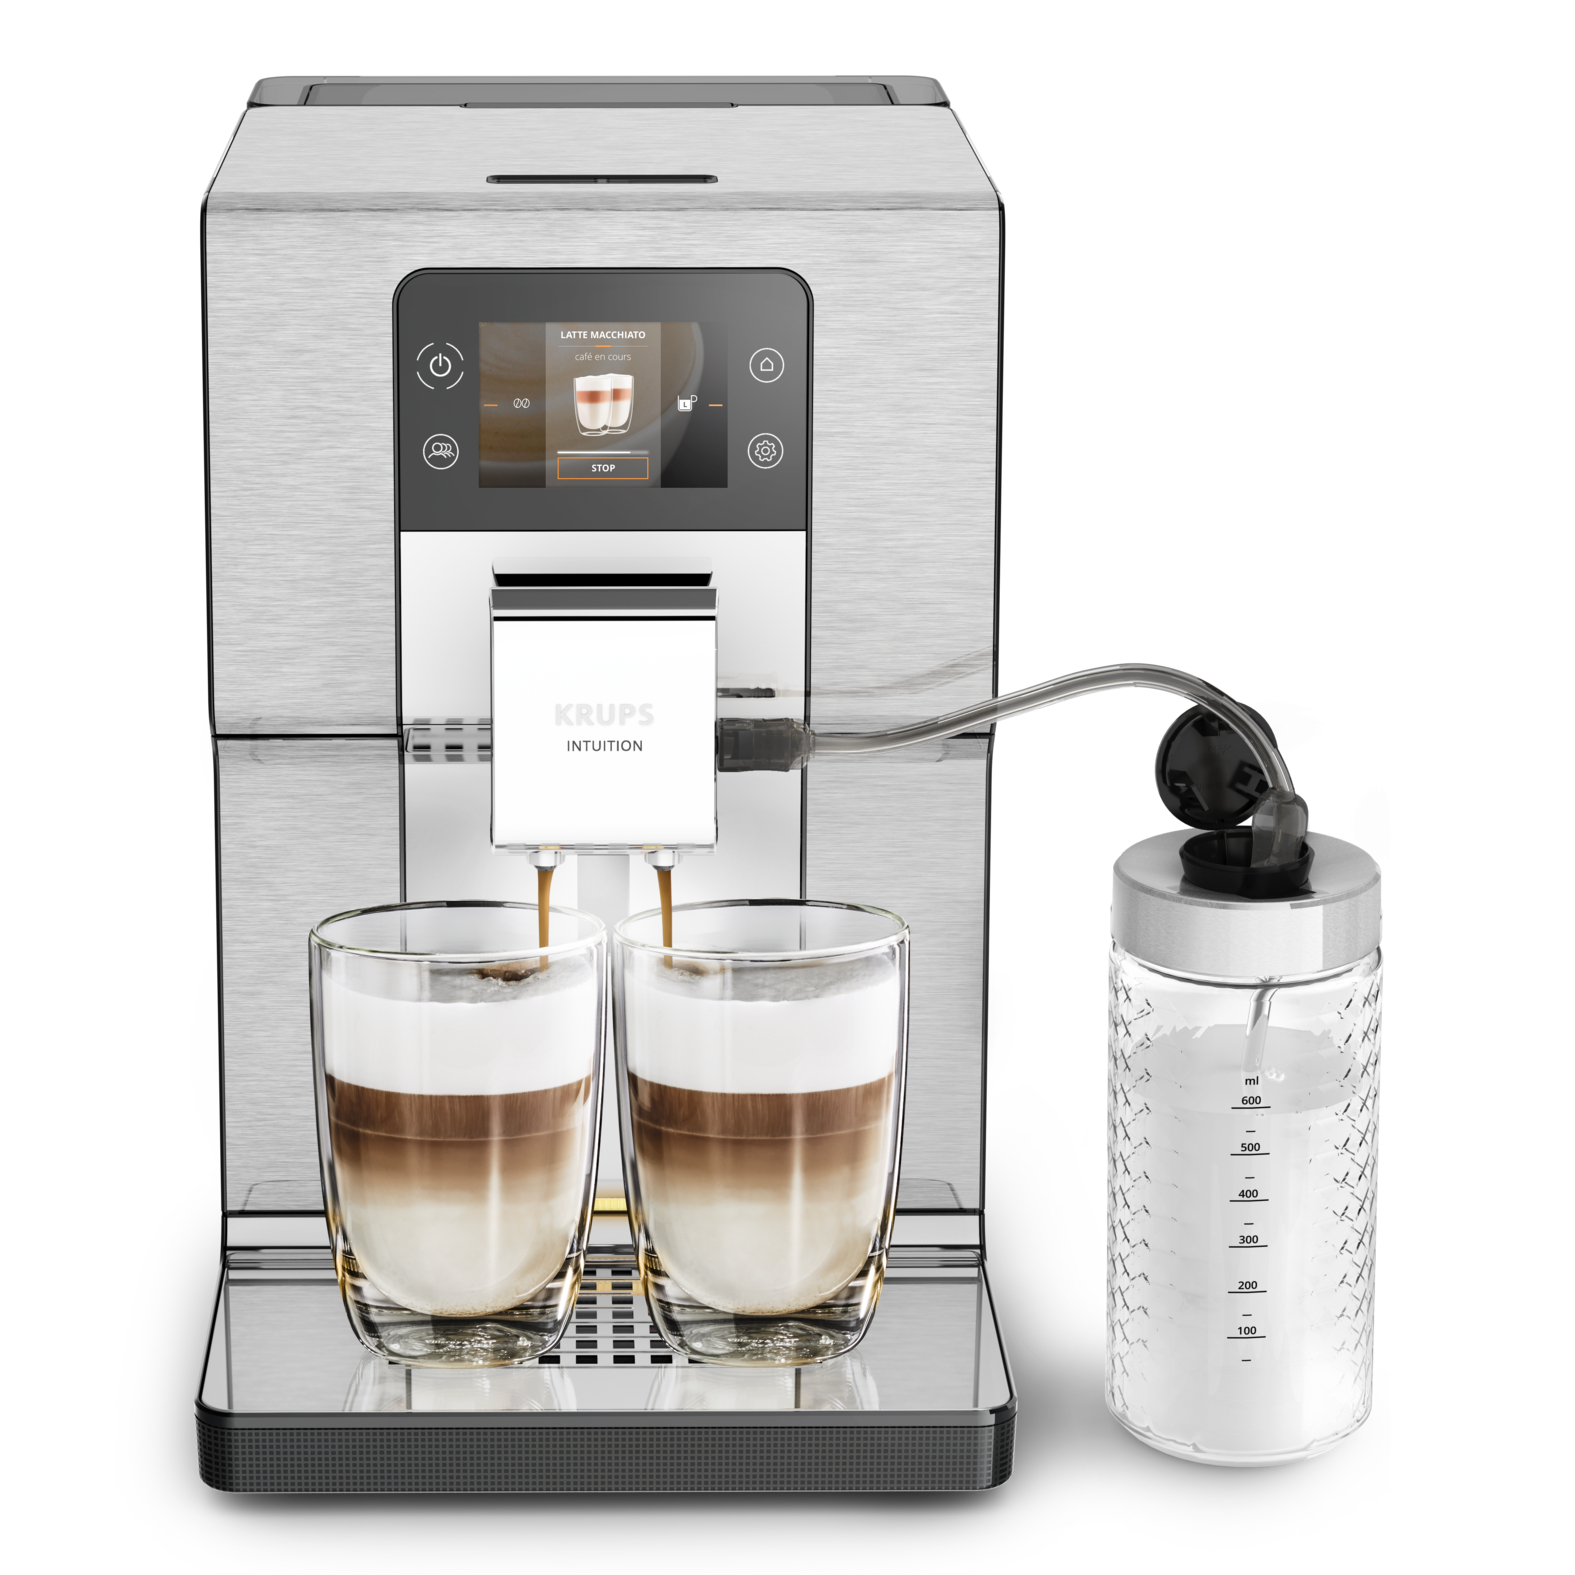 Автоматическая кофемашина Krups Intuition Experience + EA877D10, цвет черный/металлик